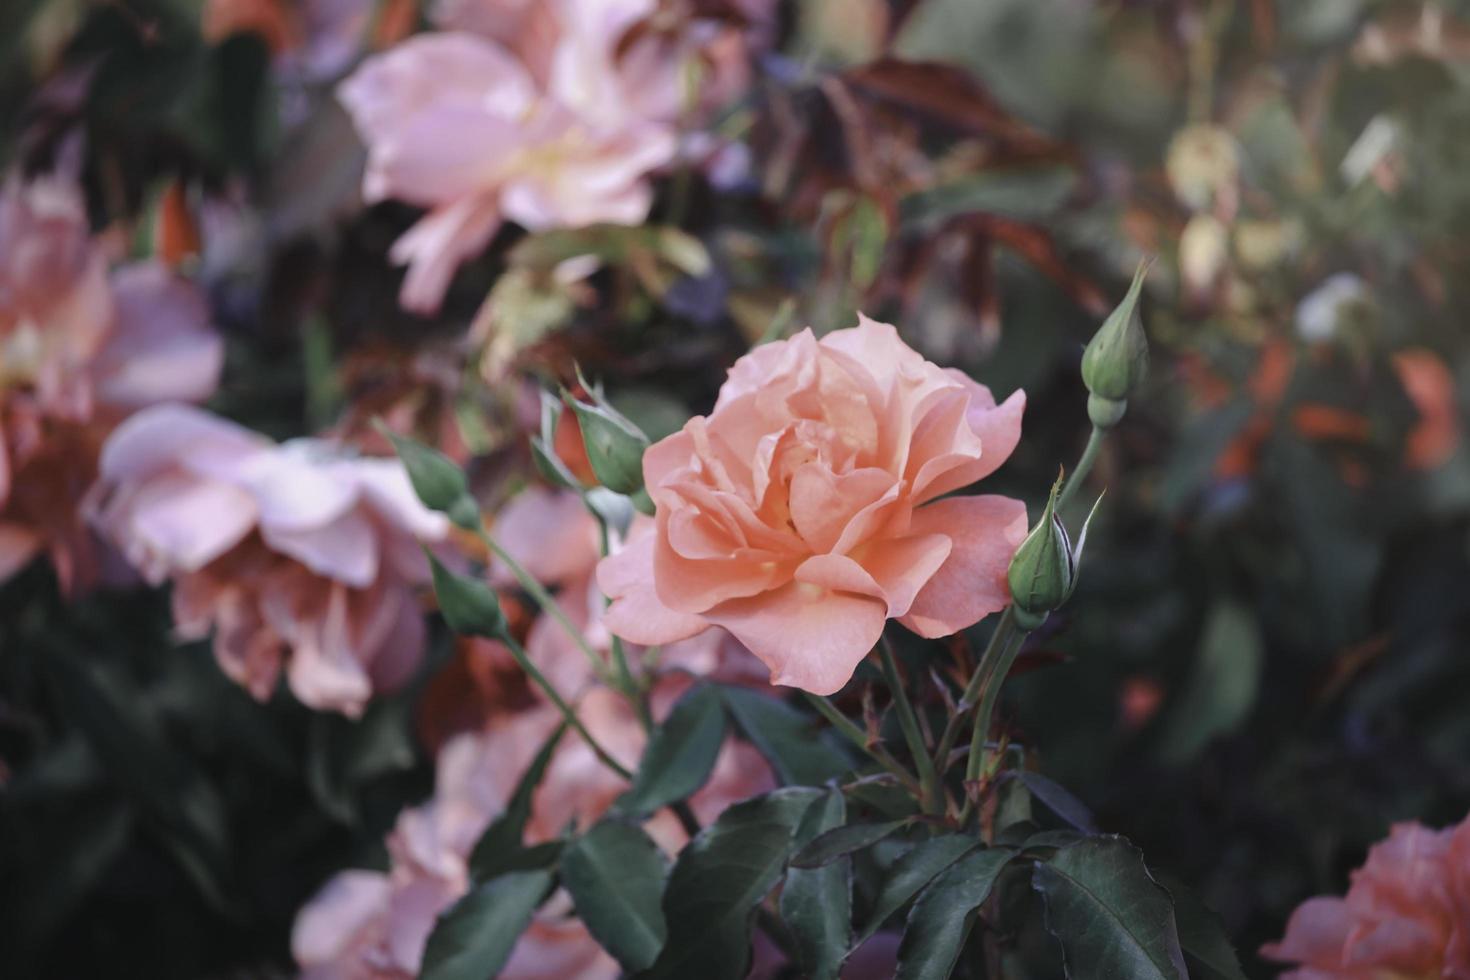 rosas alaranjadas florescendo no jardim de verão, uma das flores mais perfumadas, flores mais cheirosas, lindas e românticas foto